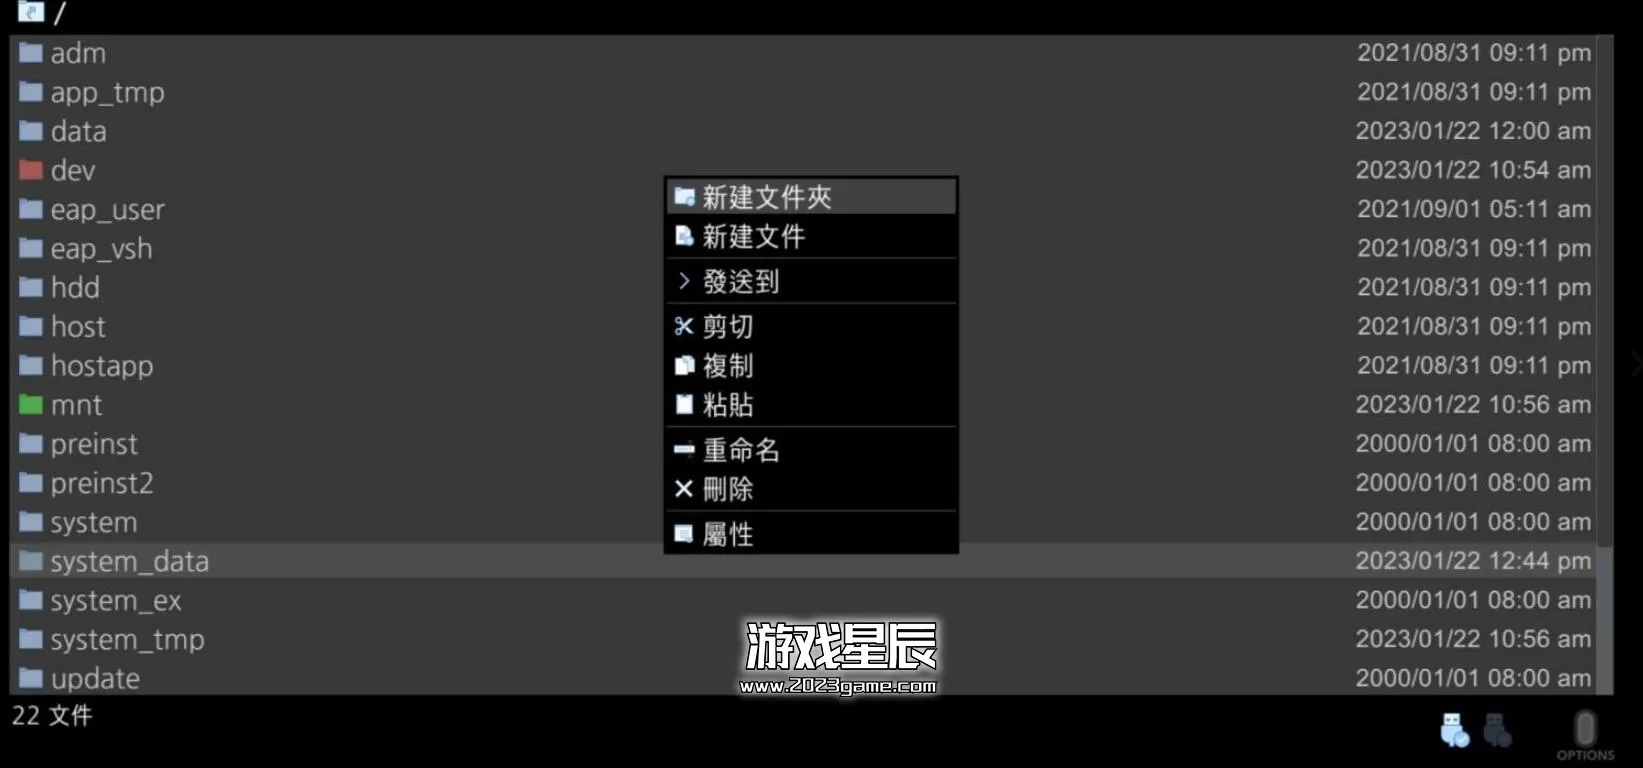 【工具】PS4-Xplorer文件管理器下载-1.3 简体中文 +Xplorer 2.01繁体中文_1